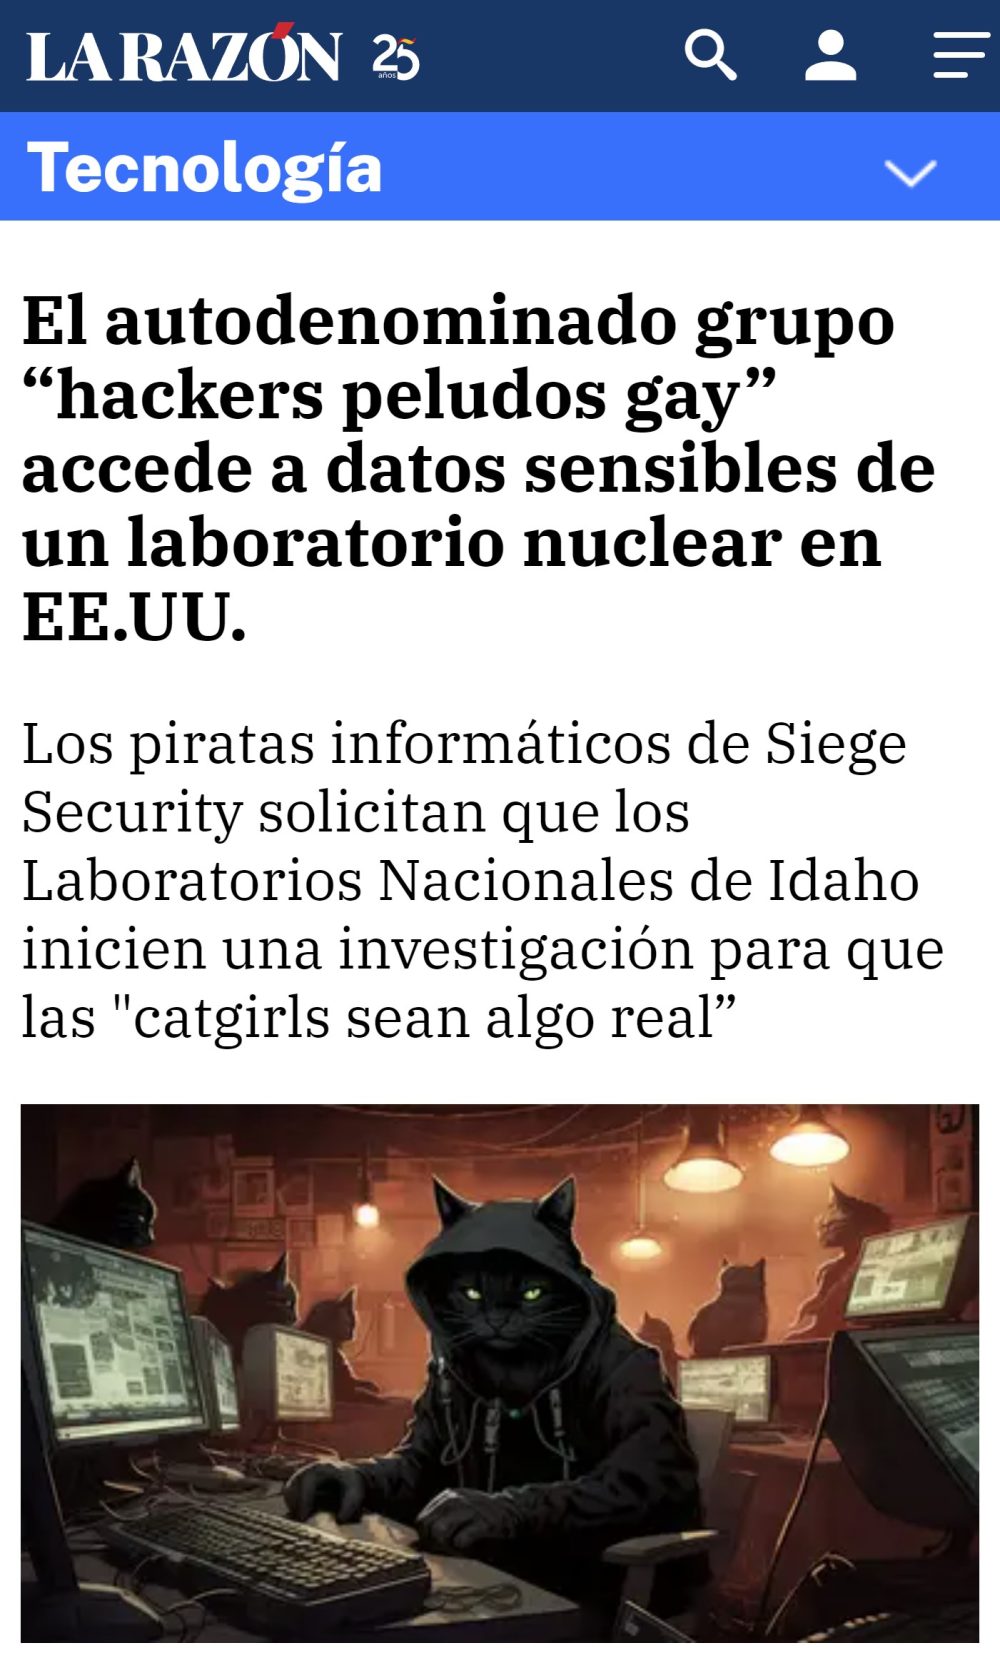 ¡Furros hackers!